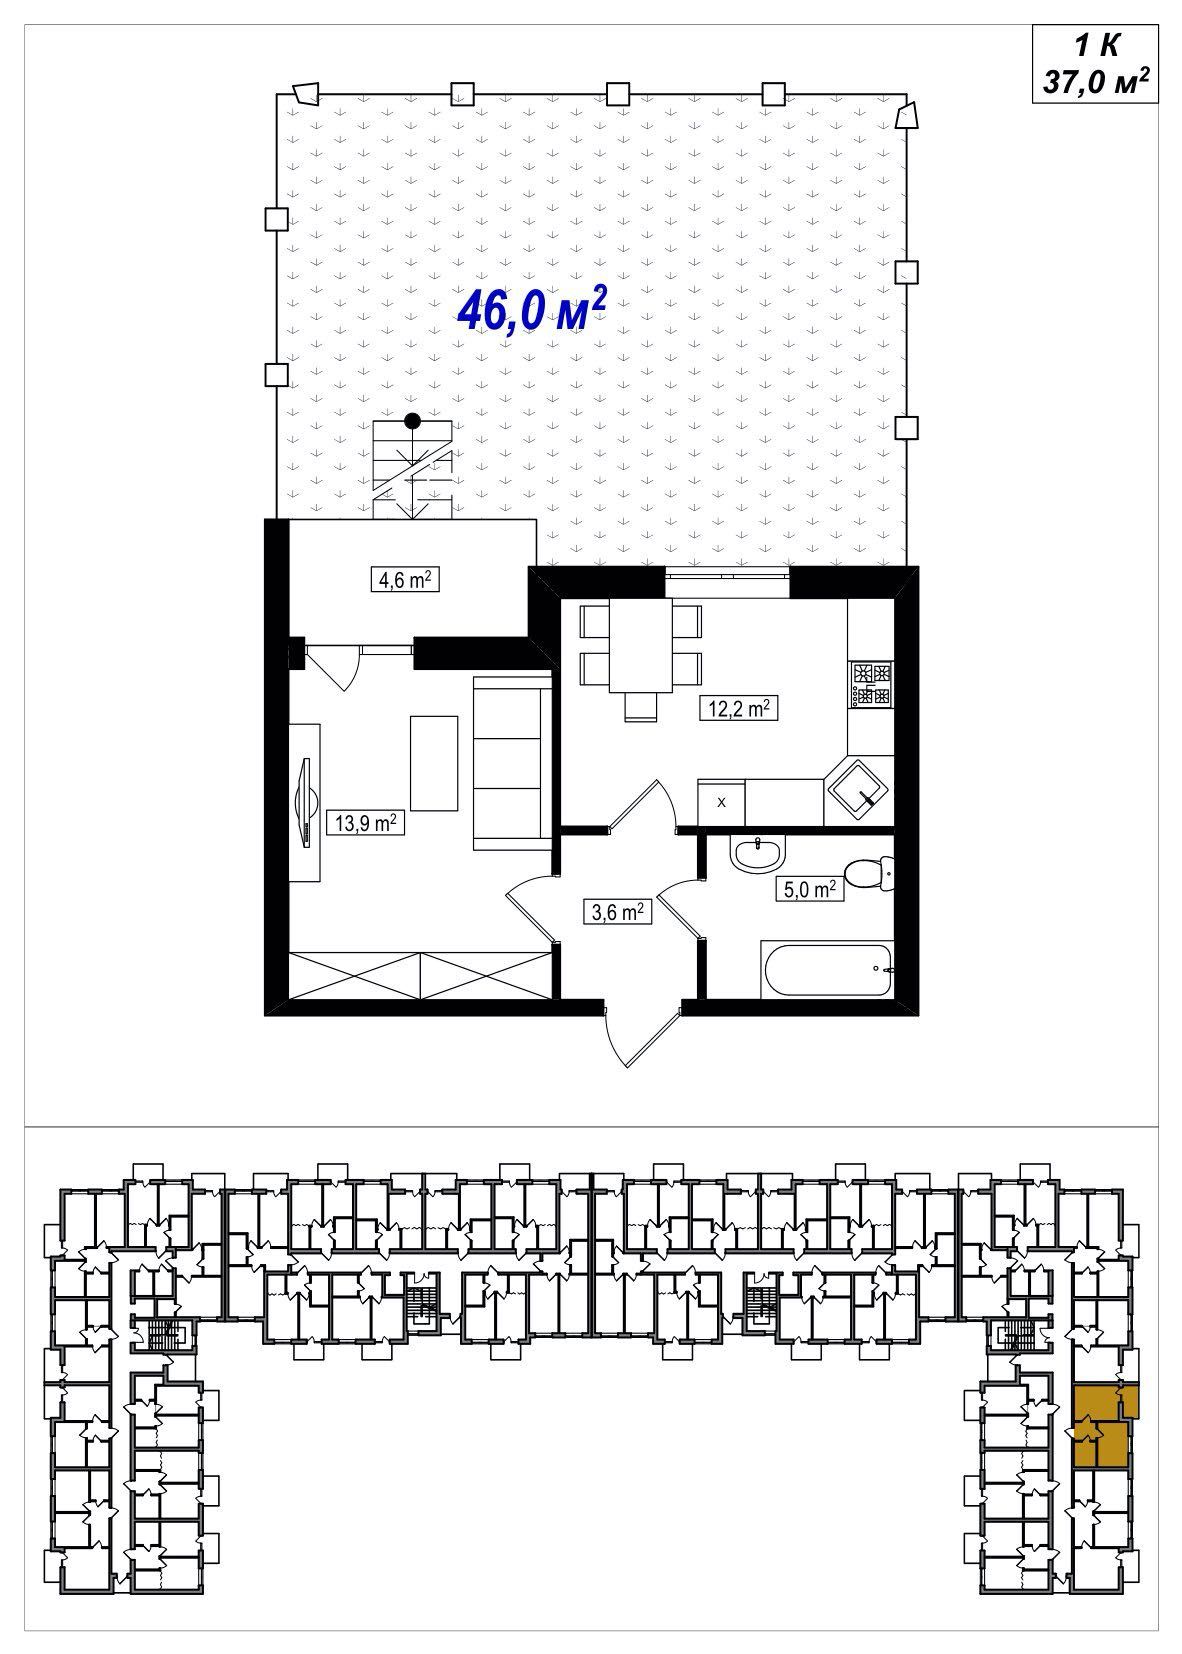 1-кімнатна 37м2 з двориком, готовий будинок -ЖК  Амстердам Клубний